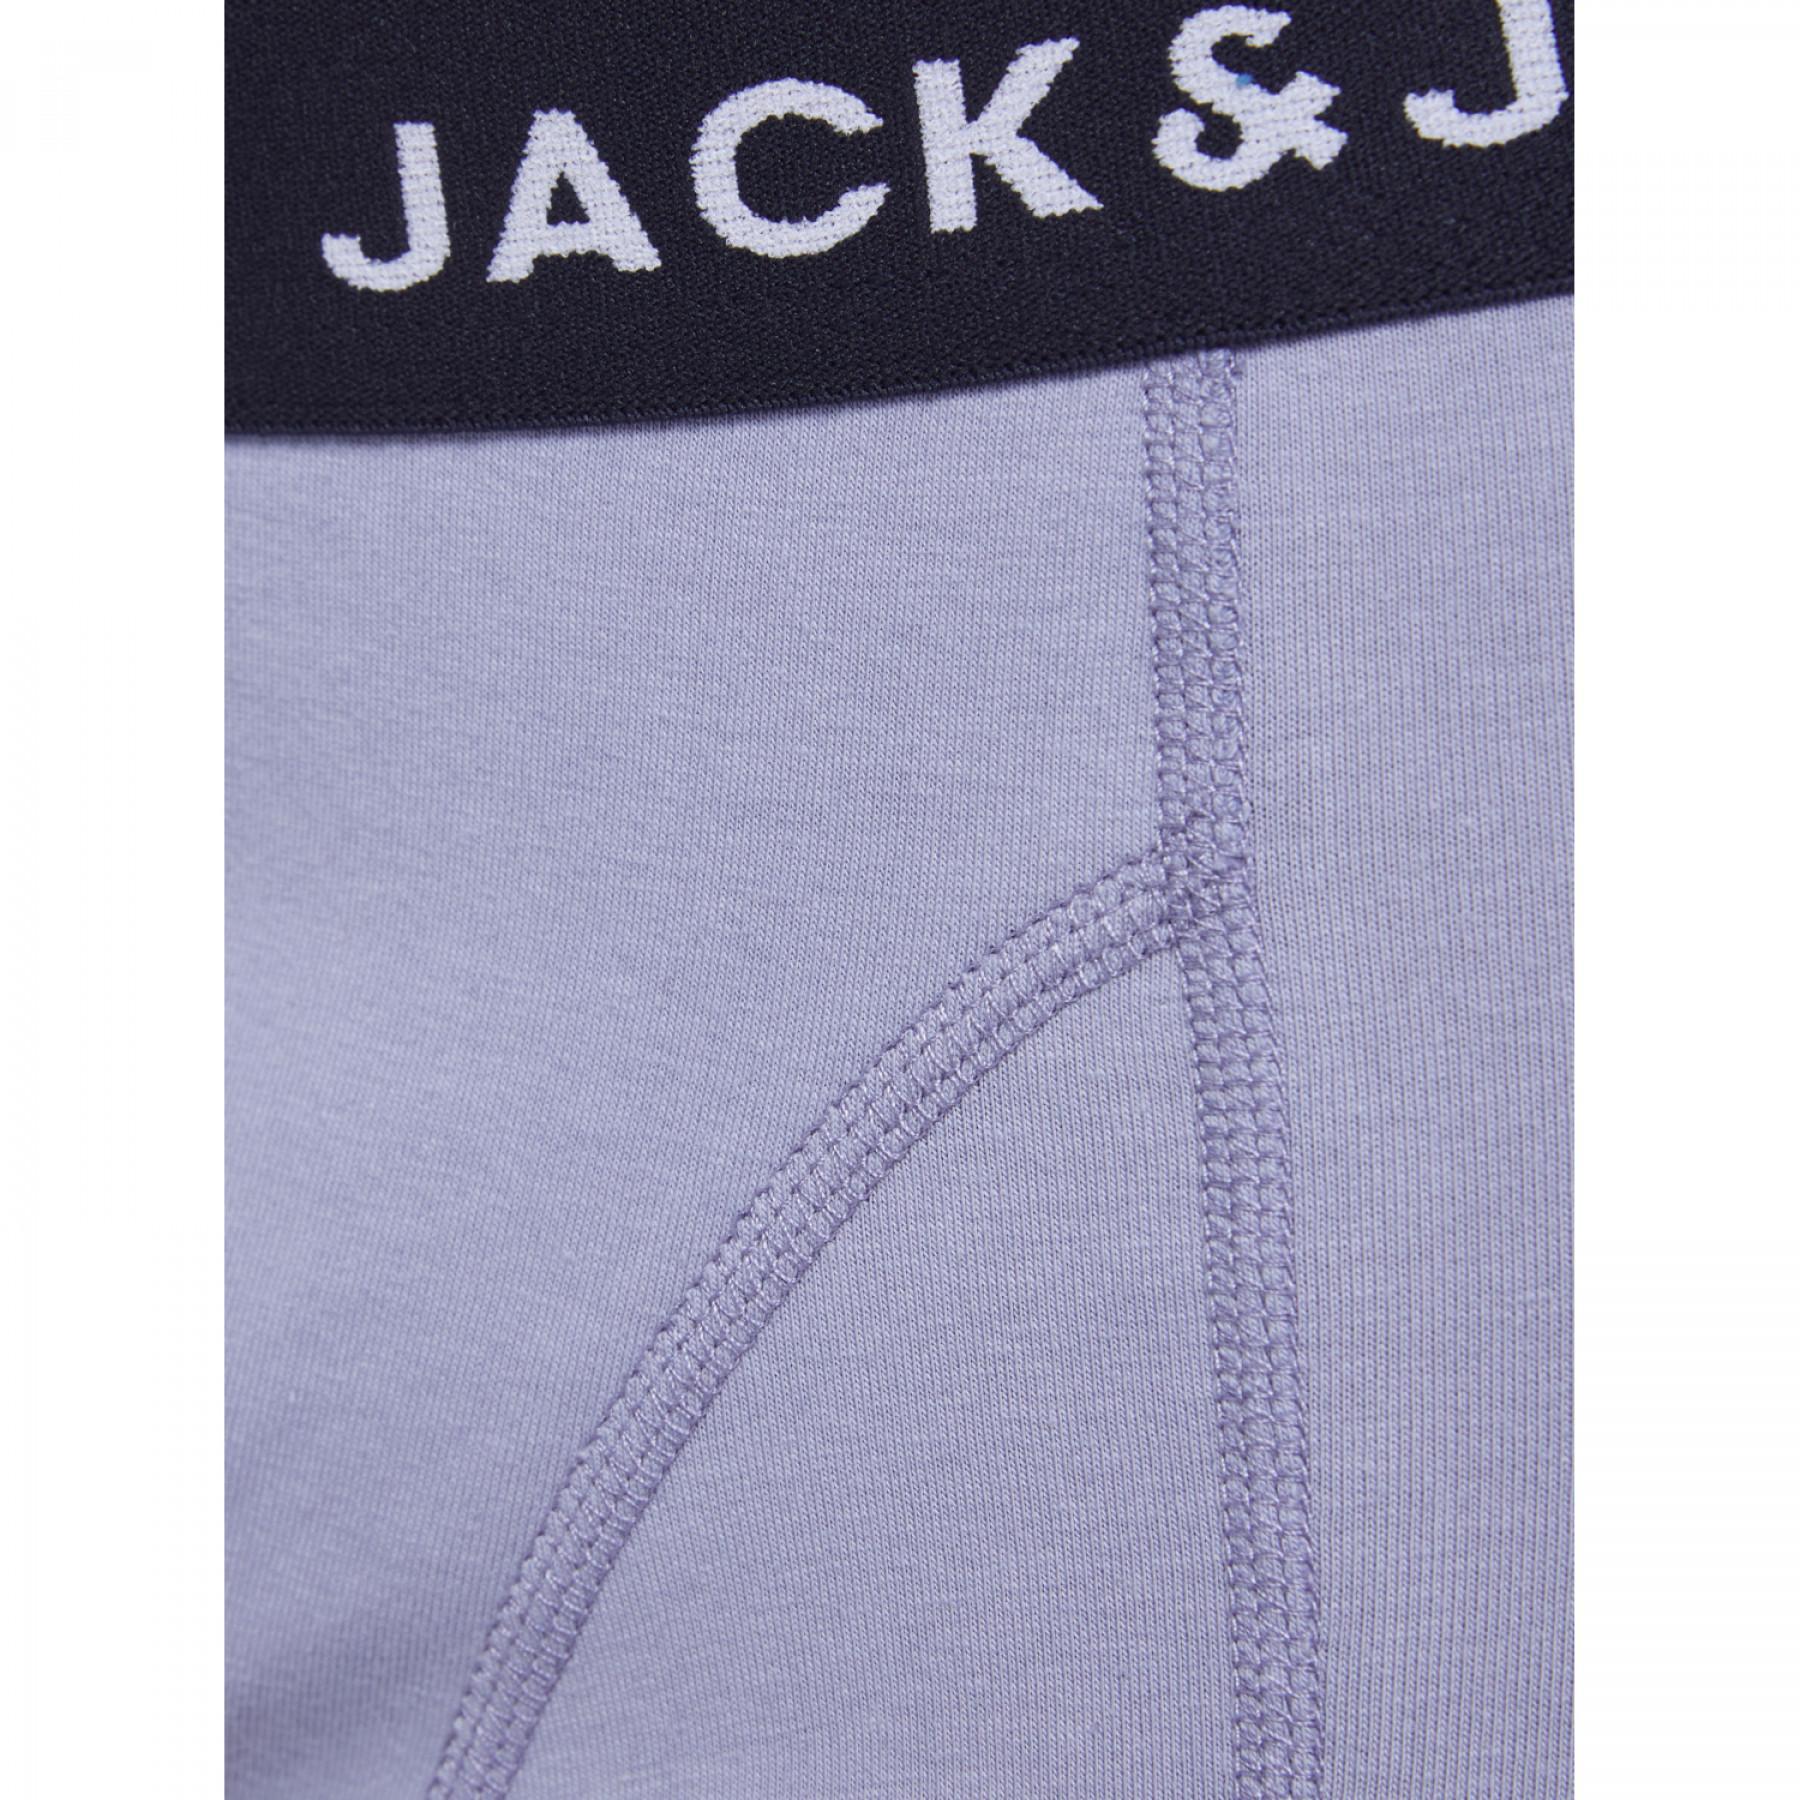 Conjunto de 5 calções de boxer Jack & Jones Jacbayer